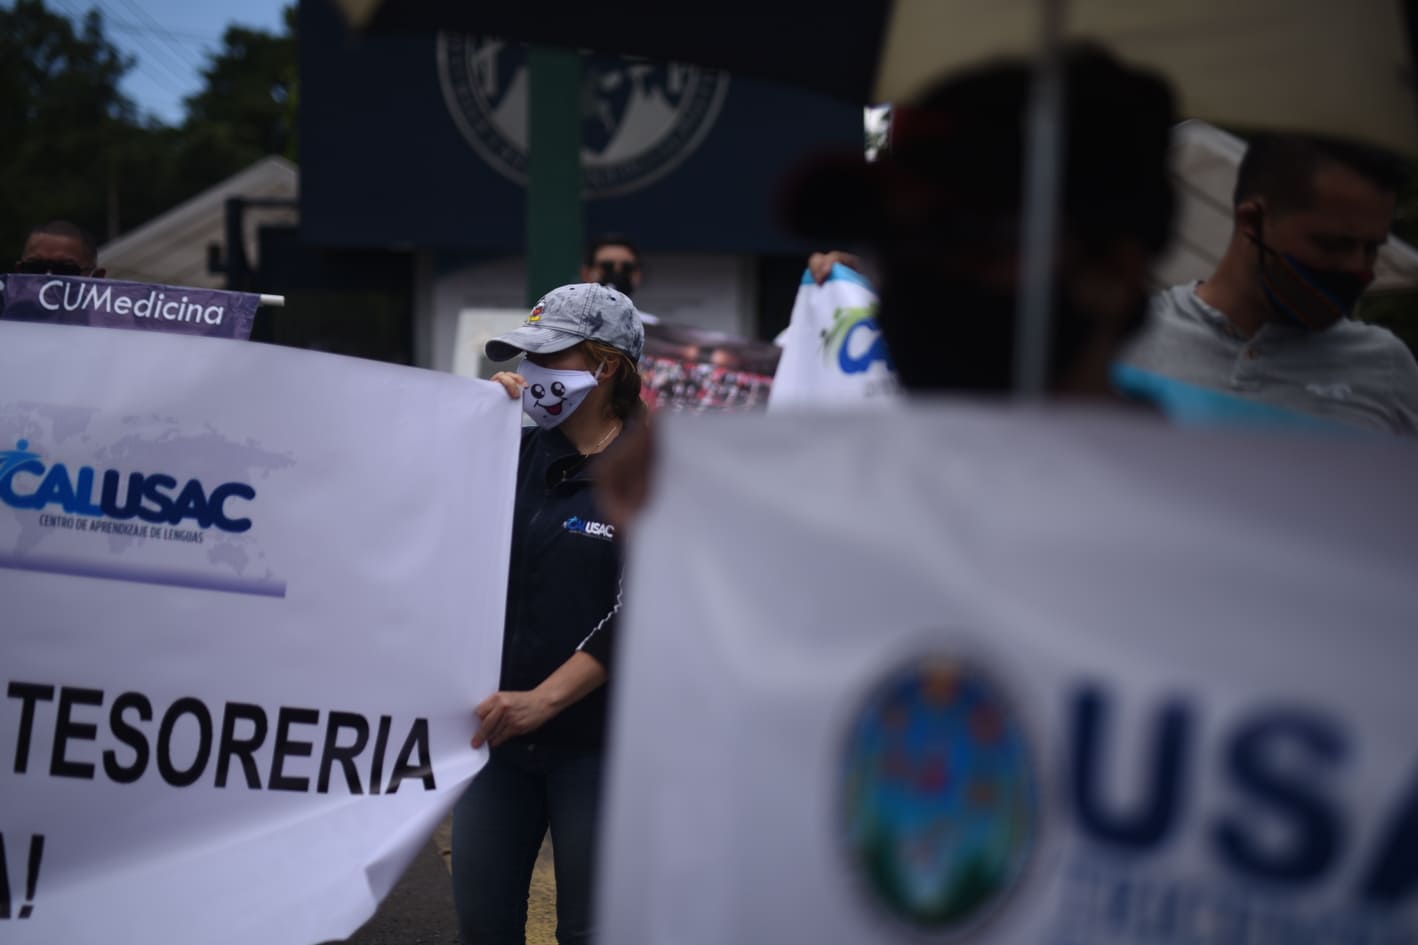 Trabajadores del Calusac exigen pago de salarios